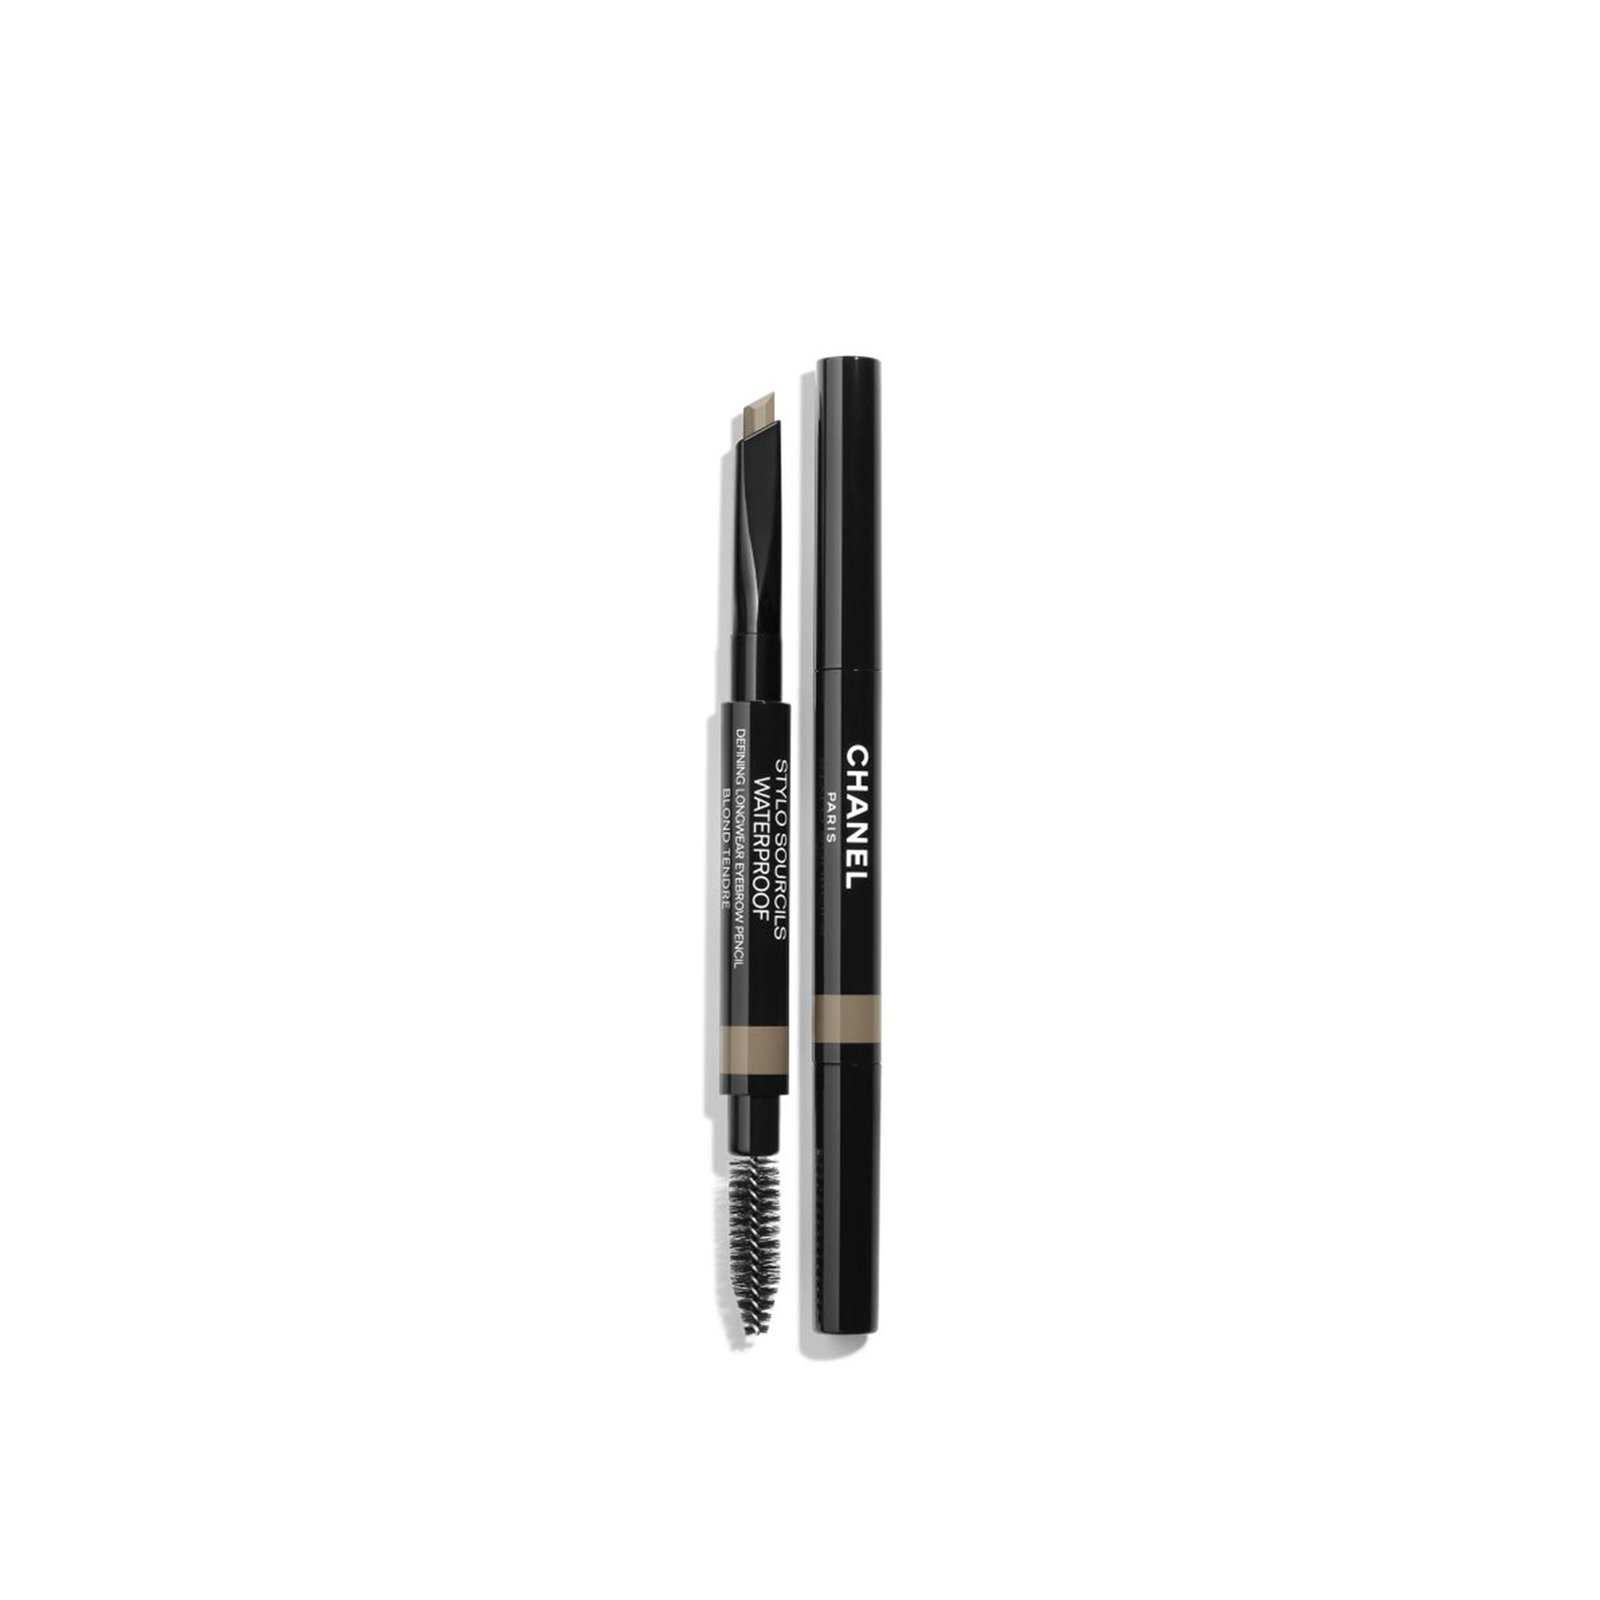 CHANEL Stylo Sourcils Waterproof Defining Longwear Eyebrow Pencil 806 Blond Tendre 0.27g